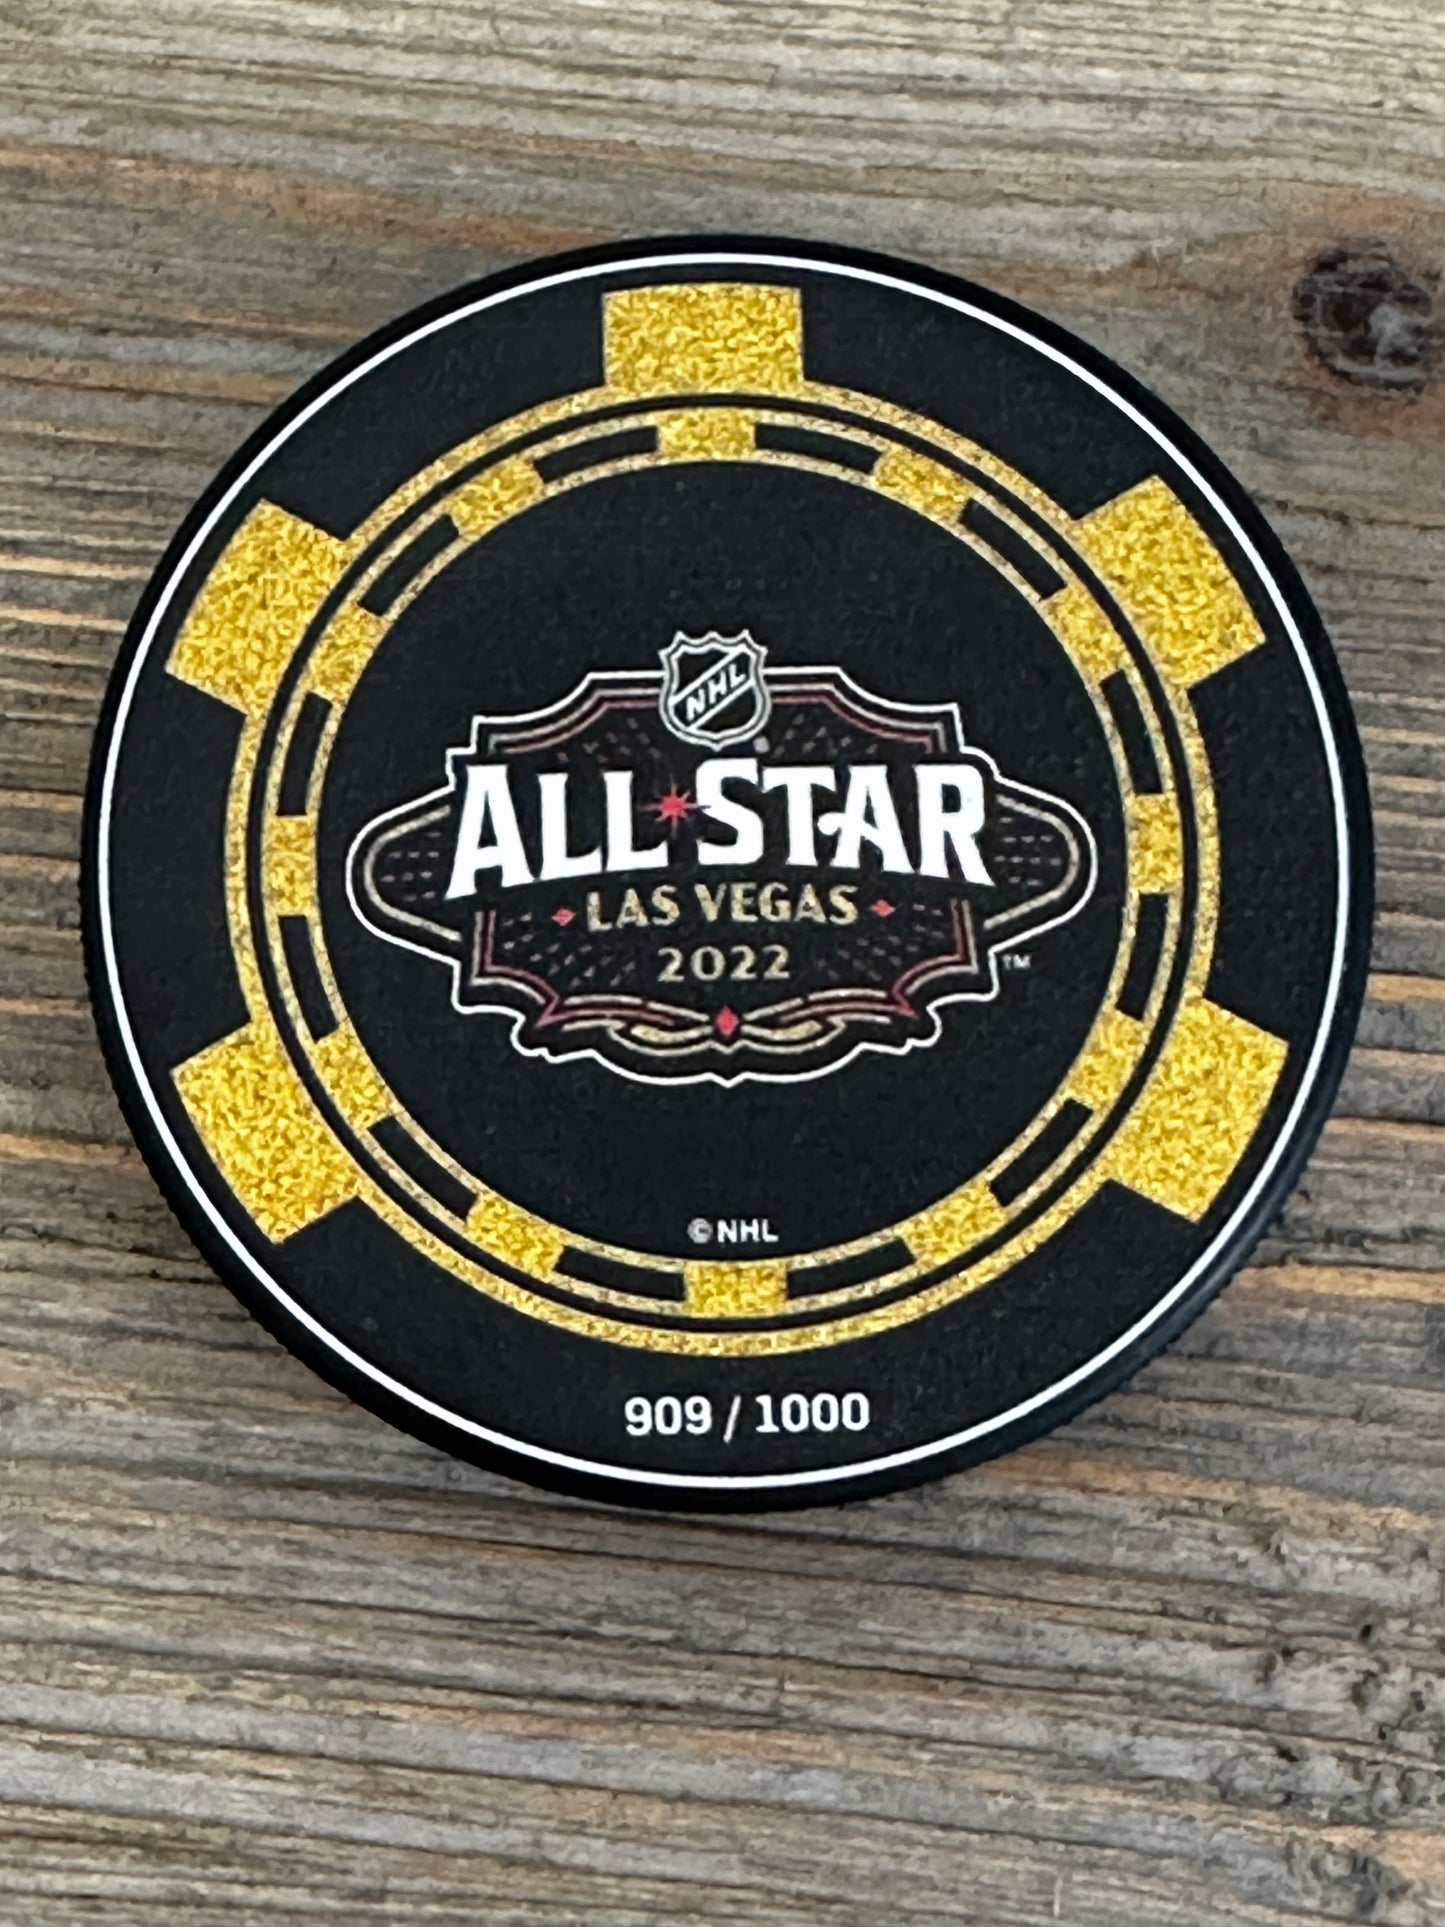 NHL hockey puck 2022 Las Vegas All Star game /1000